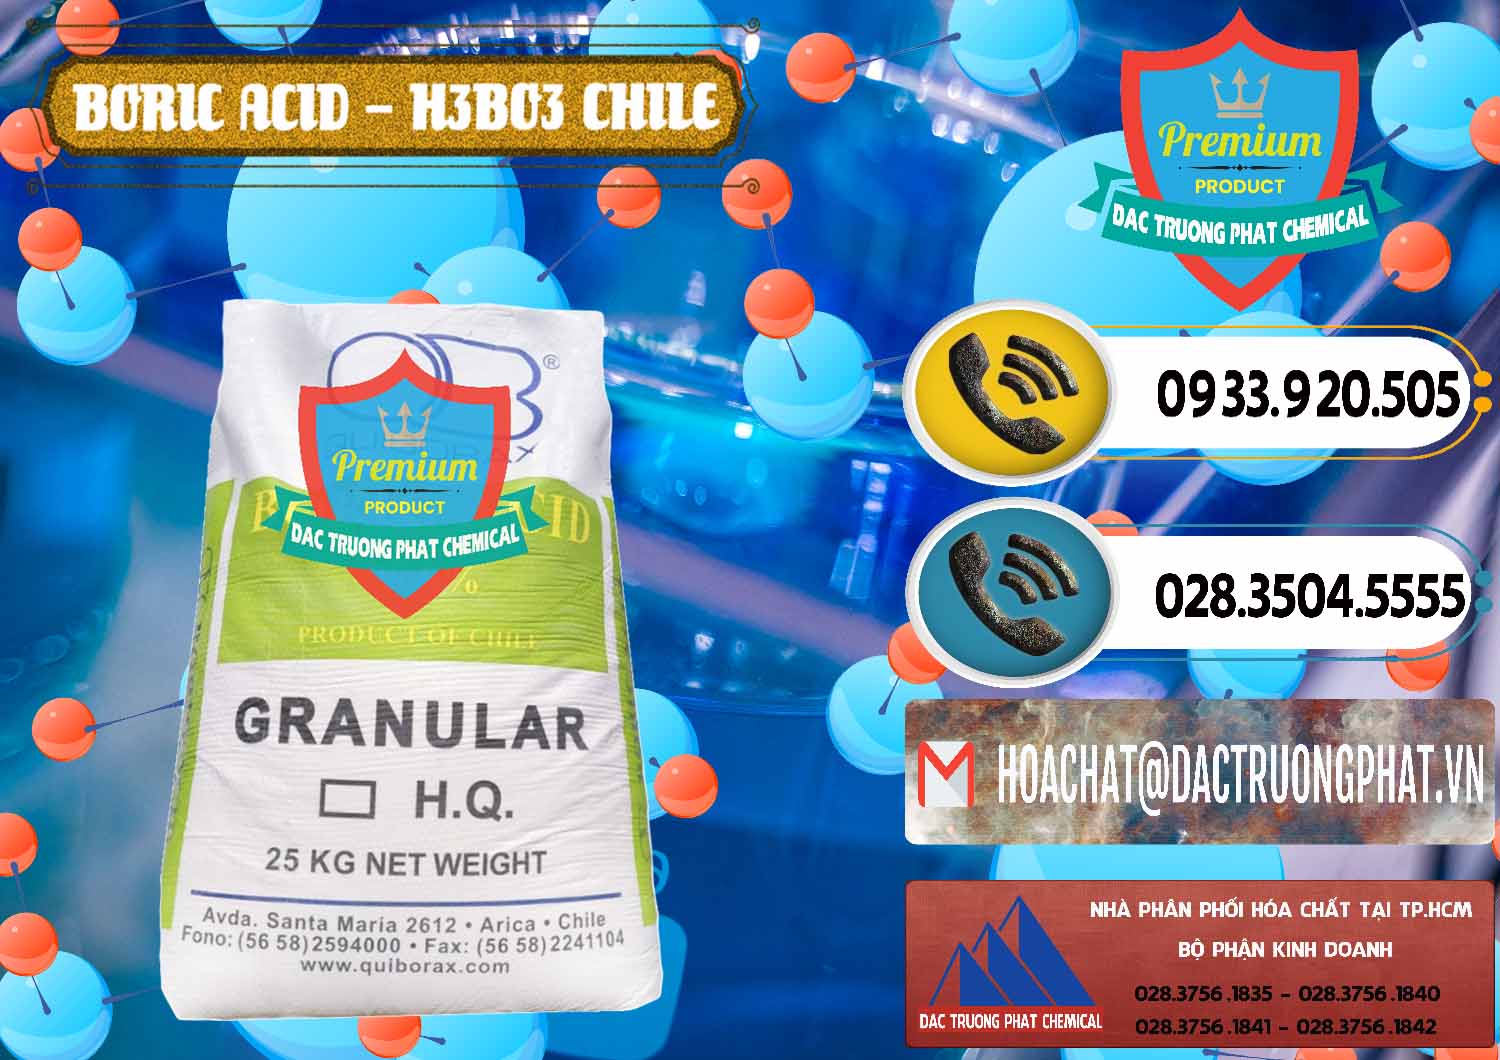 Nơi bán _ cung ứng Acid Boric – Axit Boric H3BO3 99% Quiborax Chile - 0281 - Công ty cung ứng & phân phối hóa chất tại TP.HCM - hoachatdetnhuom.vn